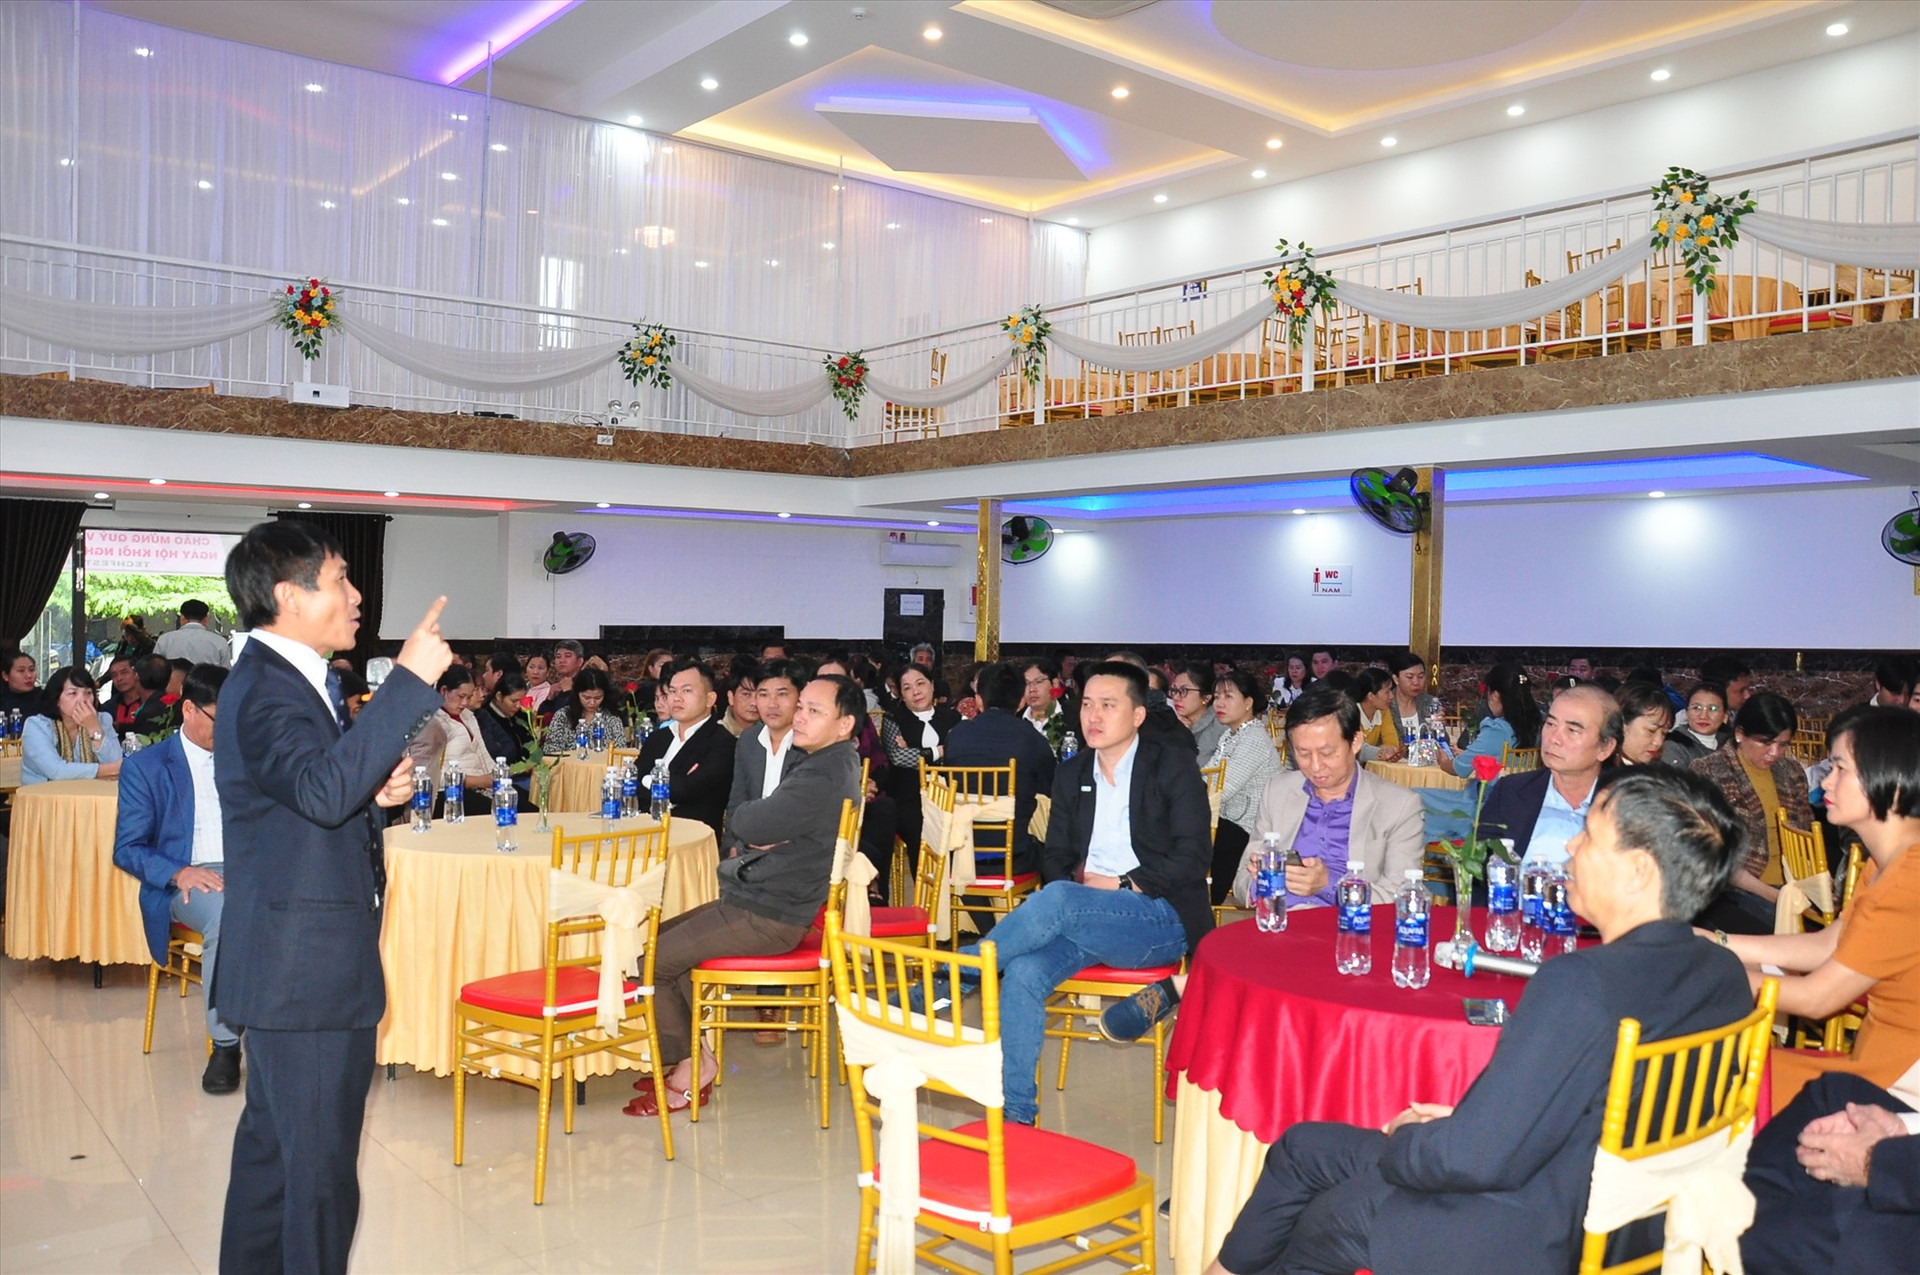 Ông Đinh Việt Hòa - Chủ tịch Hiệp hội KN quốc gia chia sẻ tại diễn đàn “Mô hình hoạt động hội KN sáng tạo địa phương” trong khuôn khổ TechFest Điện Bàn 2023. Ảnh: ĐÔNG ANH